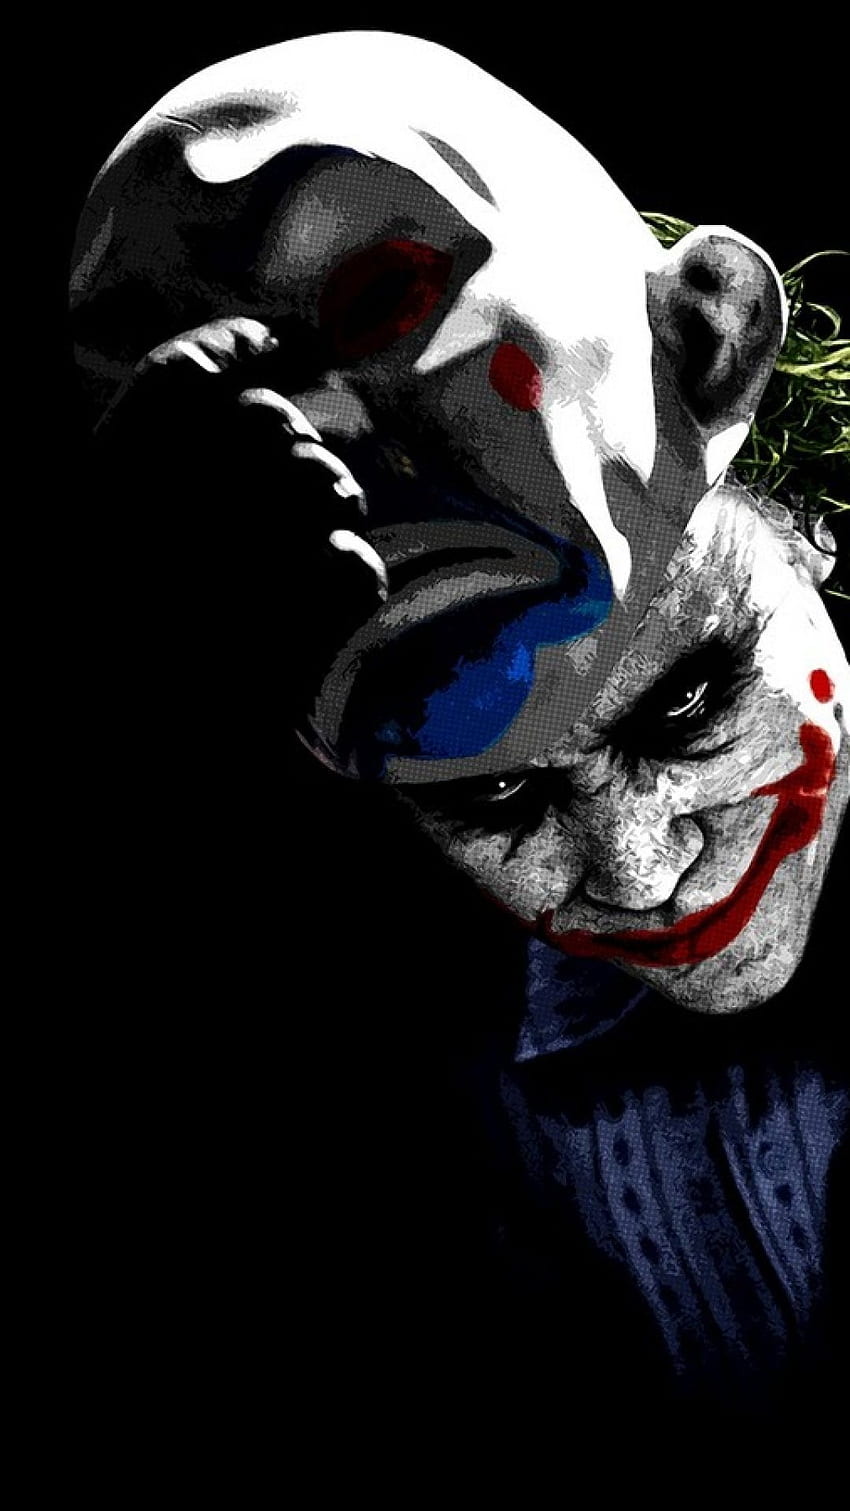 Batman Joker iPhone 5 - Best Batman Joker iPhone, The Joker HD ...